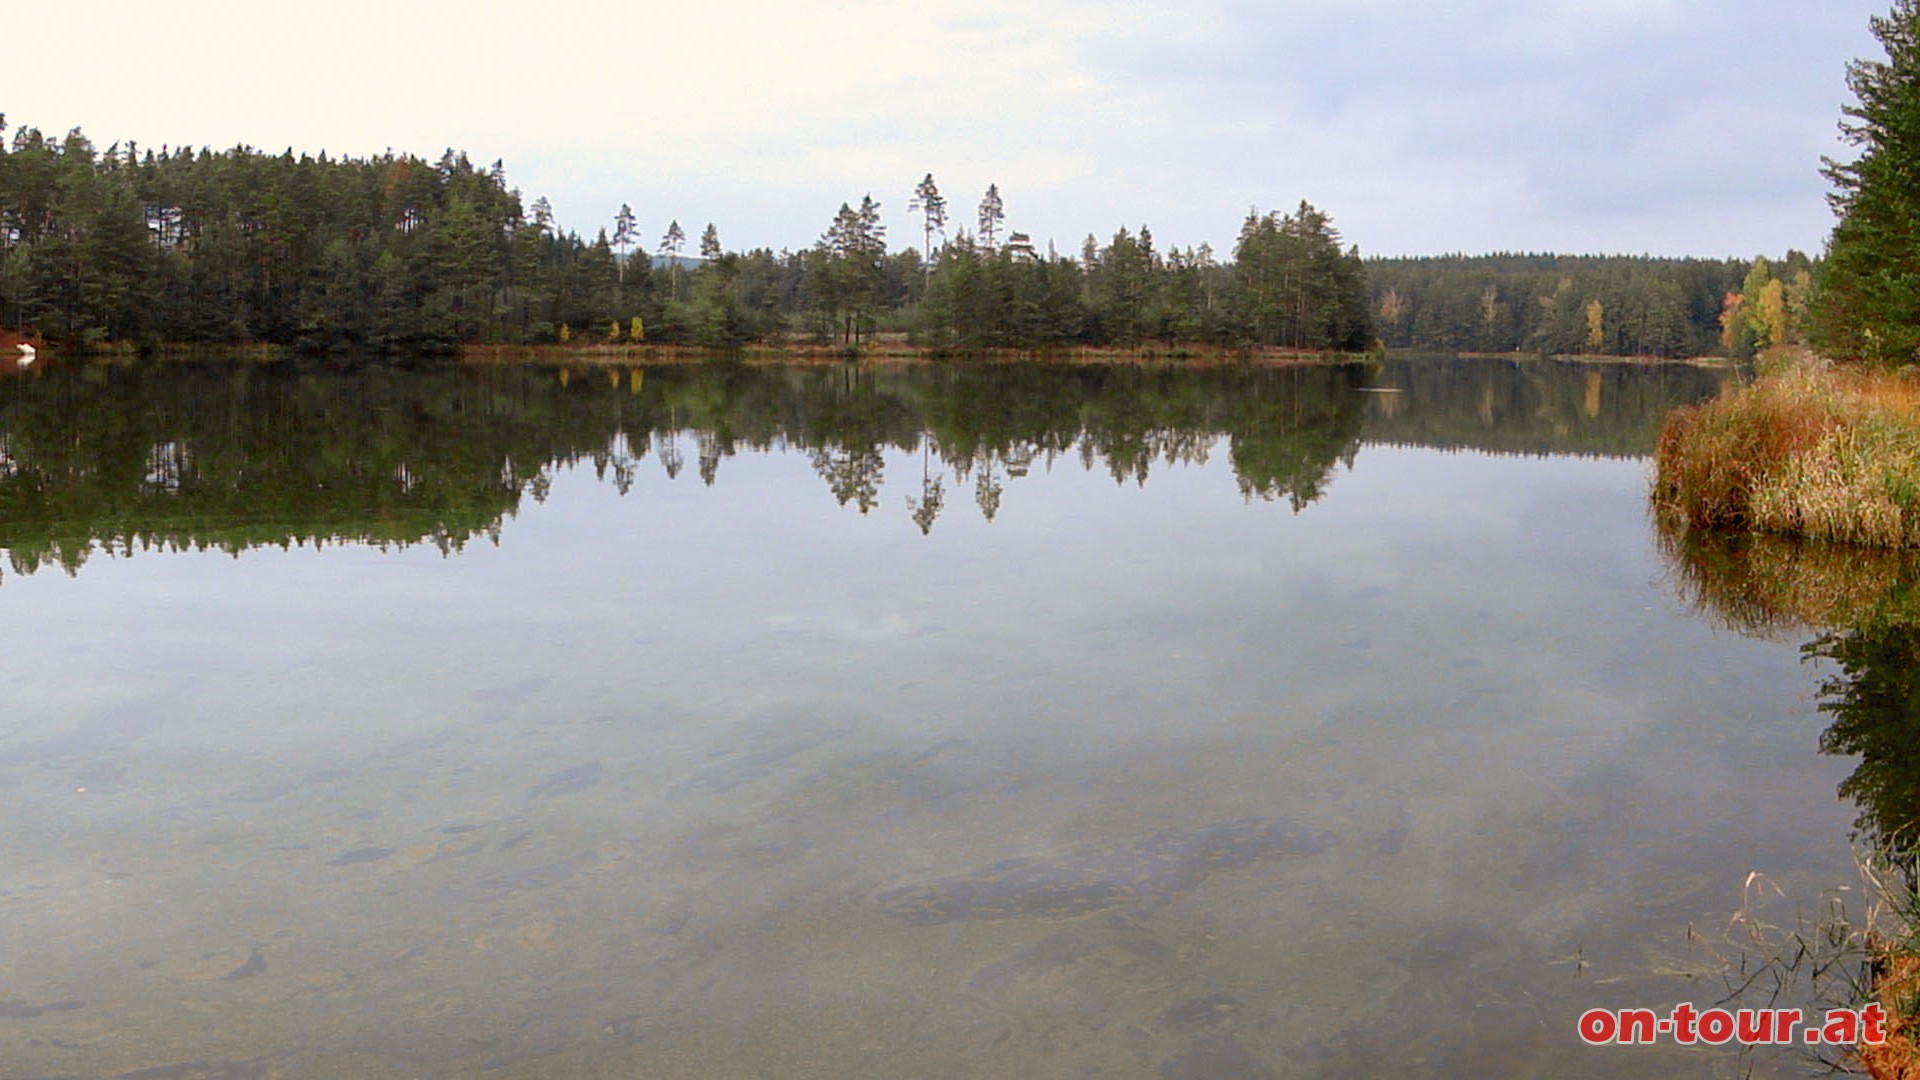 ... der reizvolle, langgestreckte Stankauer Teich direkt an der Grenze ist sehenswert.